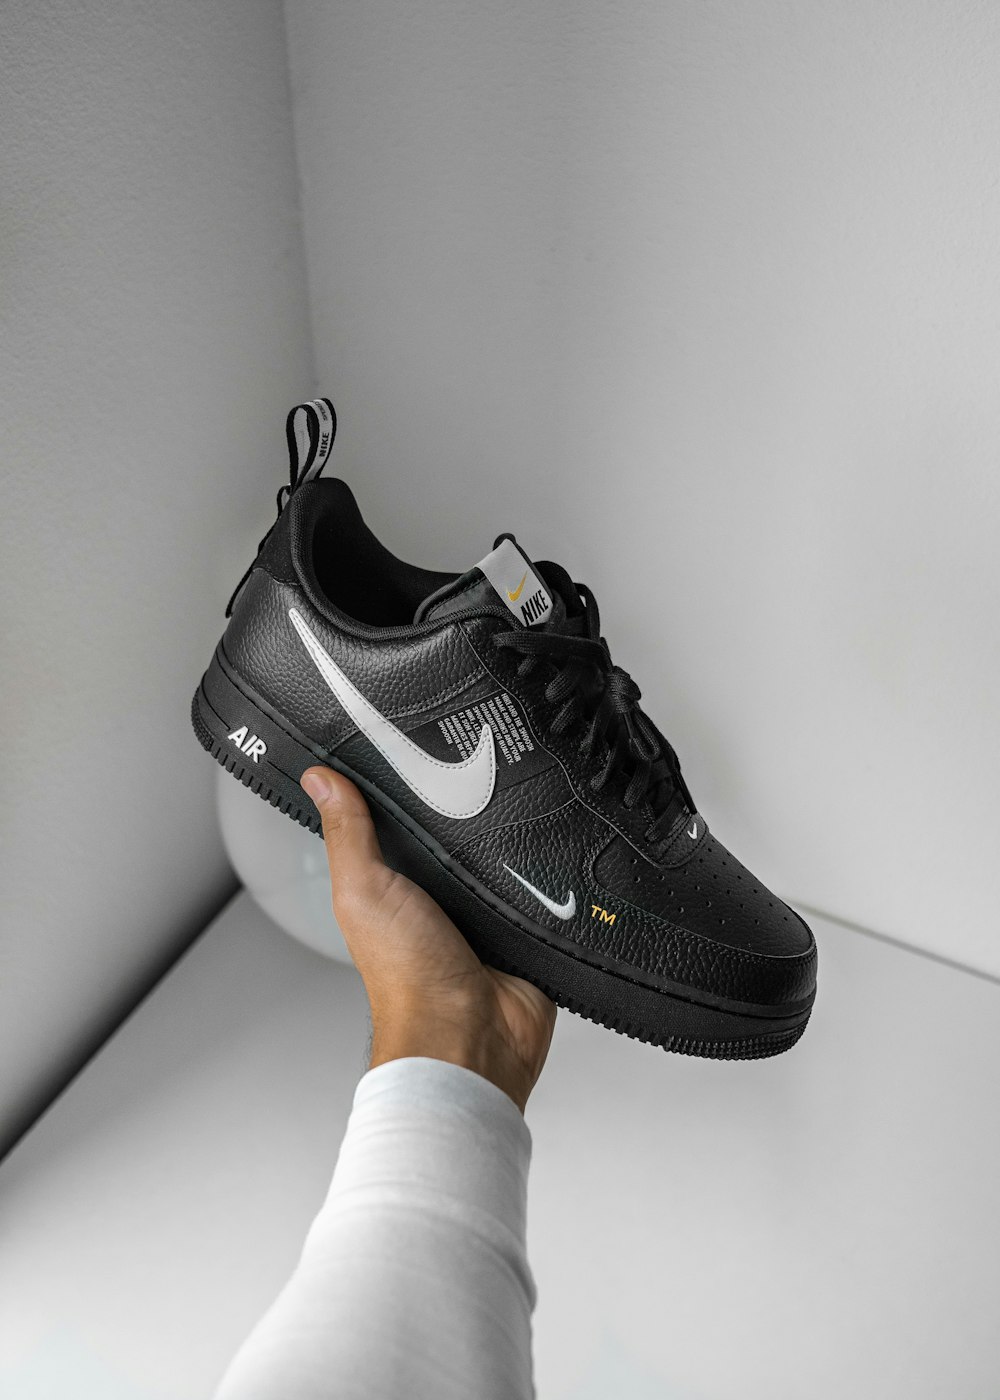 Foto Zapatilla Nike Air Force 1 en blanco y negro – Imagen Zapato gratis en  Unsplash